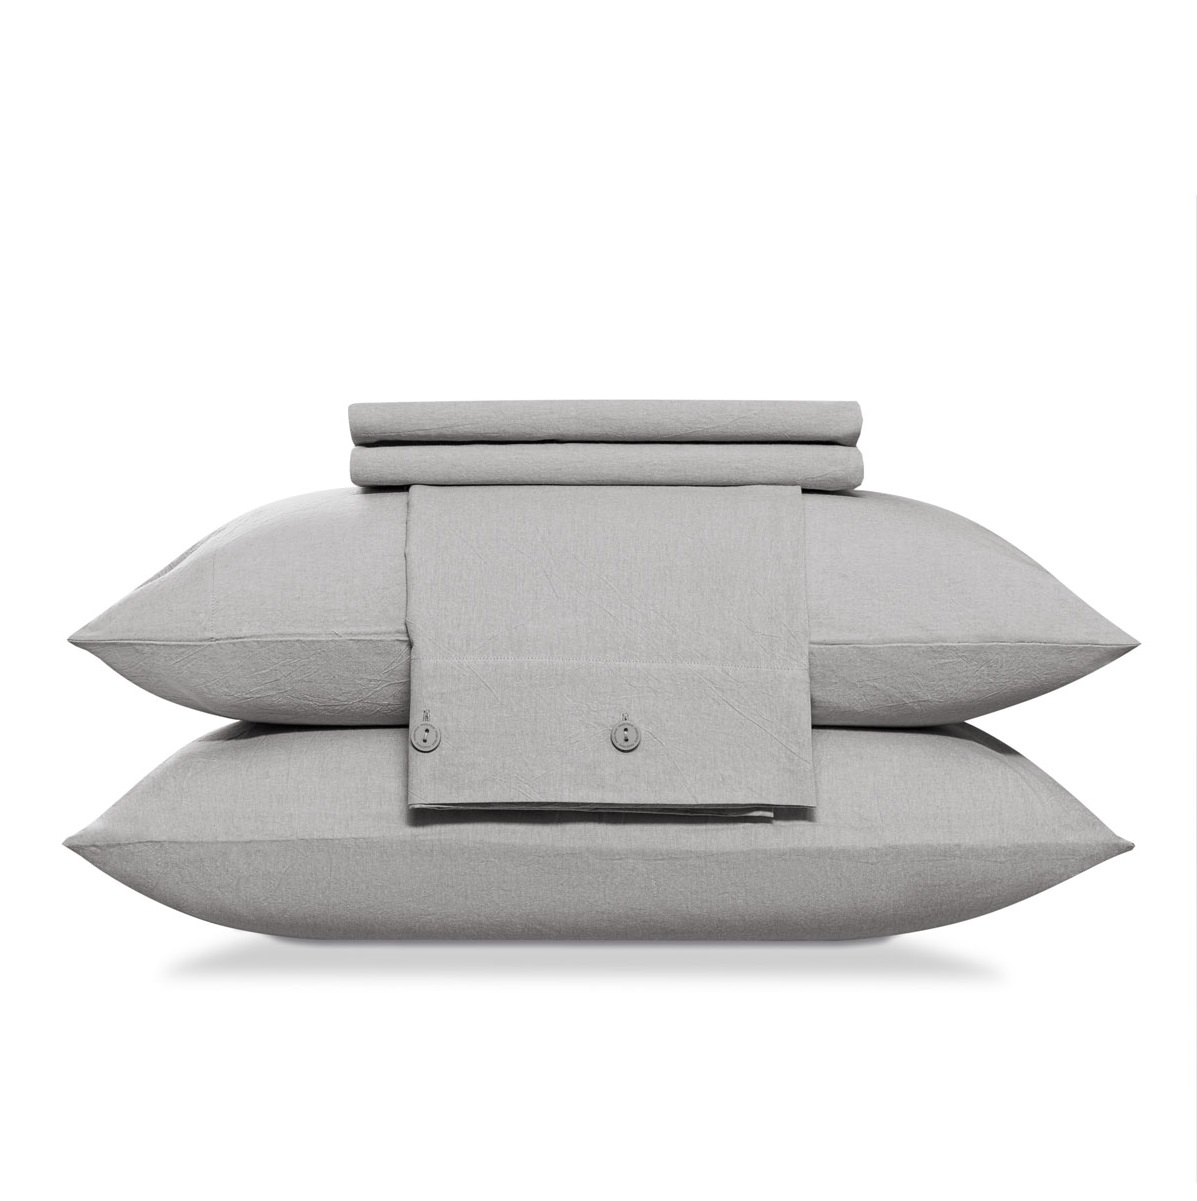 Комплект постельного белья Prime Prive Смоген Двуспальный кинг сайз светло-серый, размер Кинг сайз - фото 14